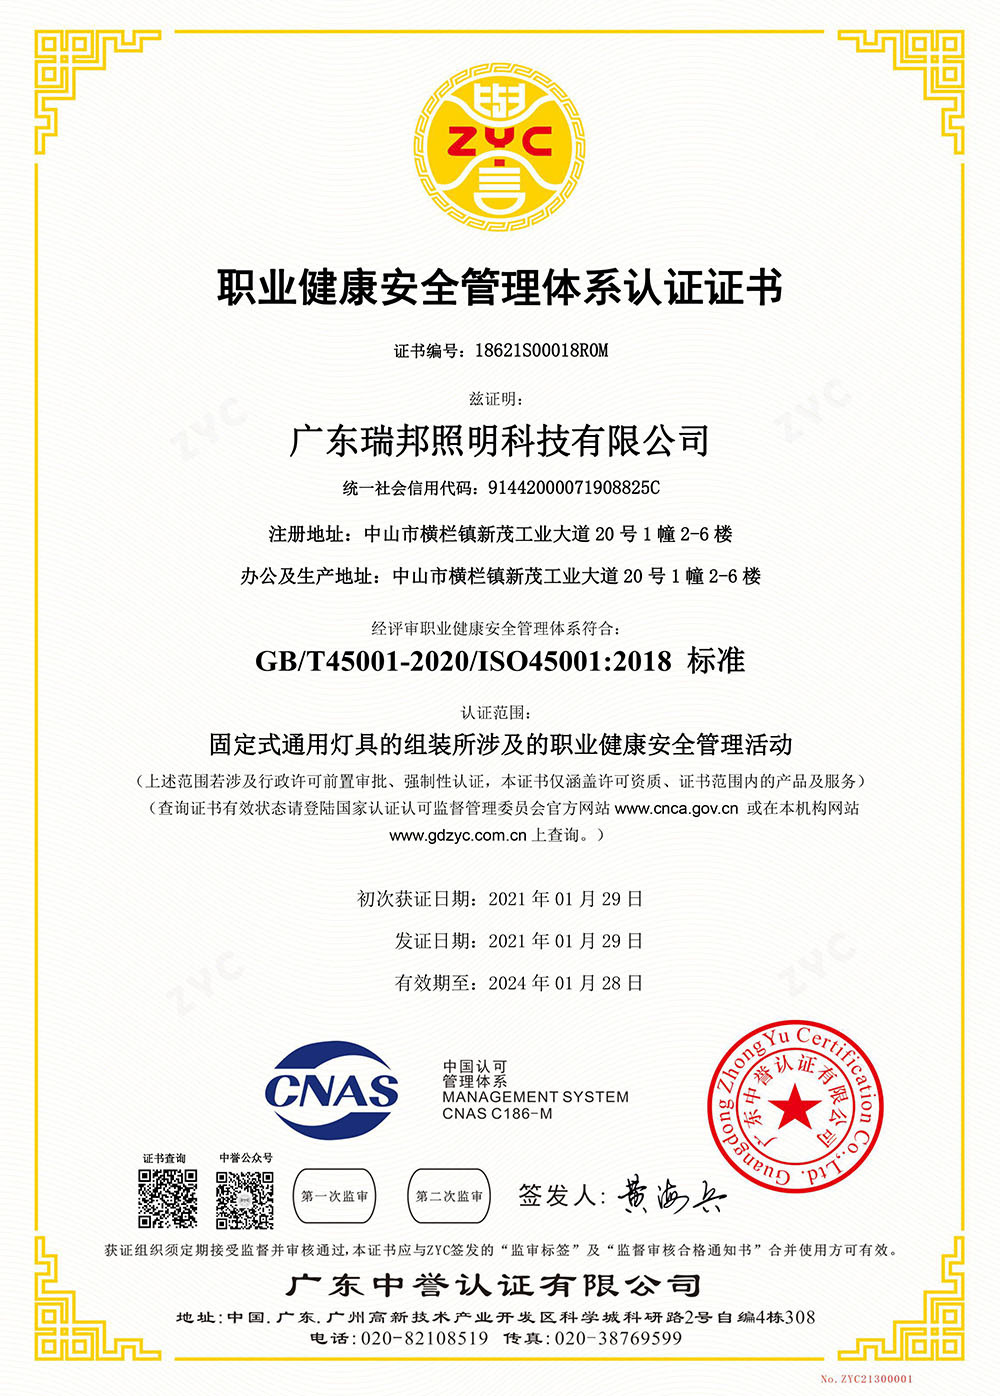 职业健康安全管理体系认证ISO45001 中文